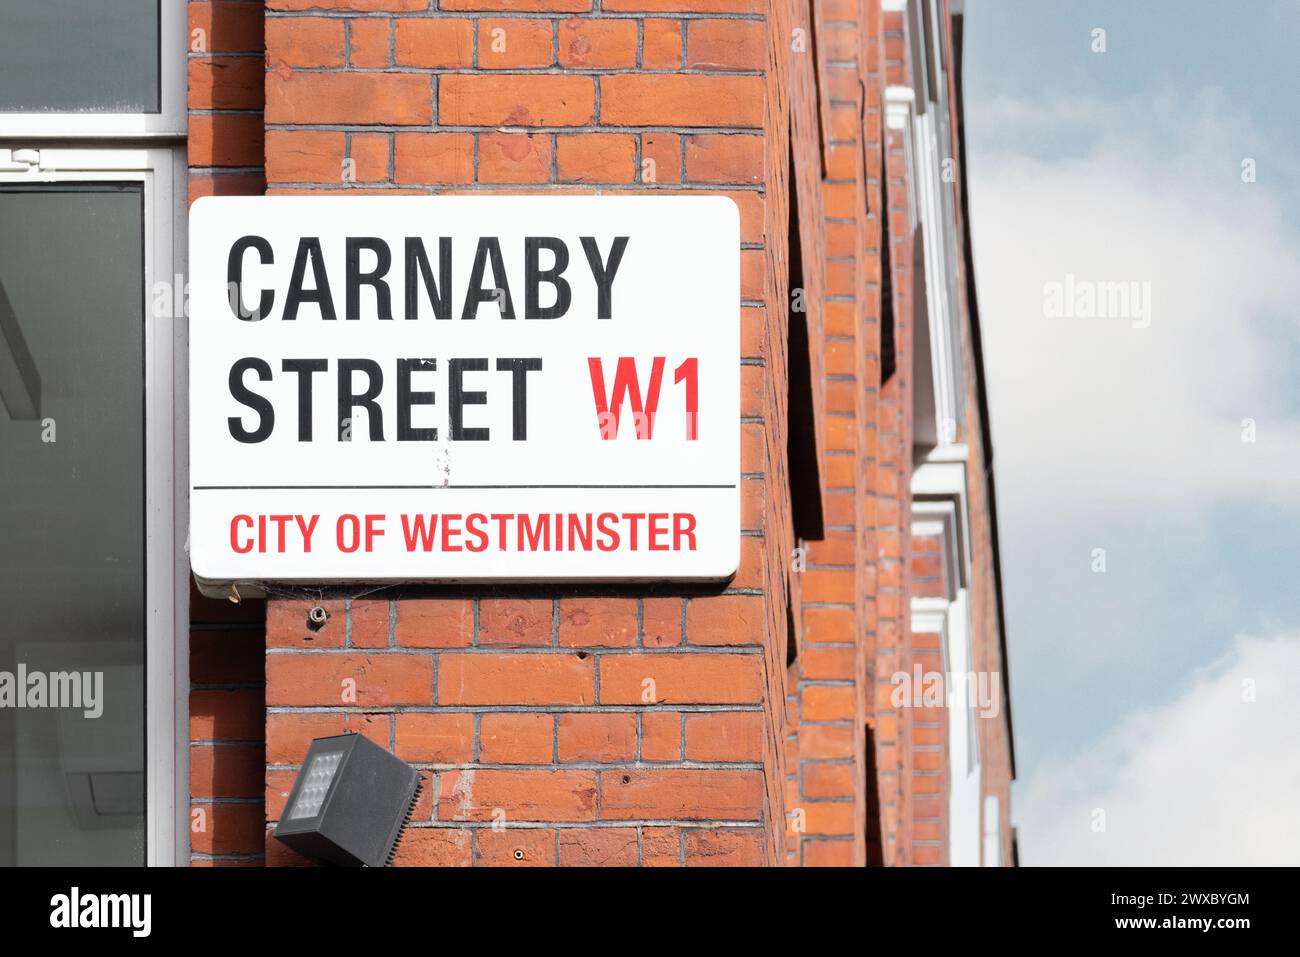 Un panneau de rue pour Carnaby Street, symbole de la culture et de la mode britanniques. Symbolique des années soixante et toujours un favori du shopping et des touristes Banque D'Images